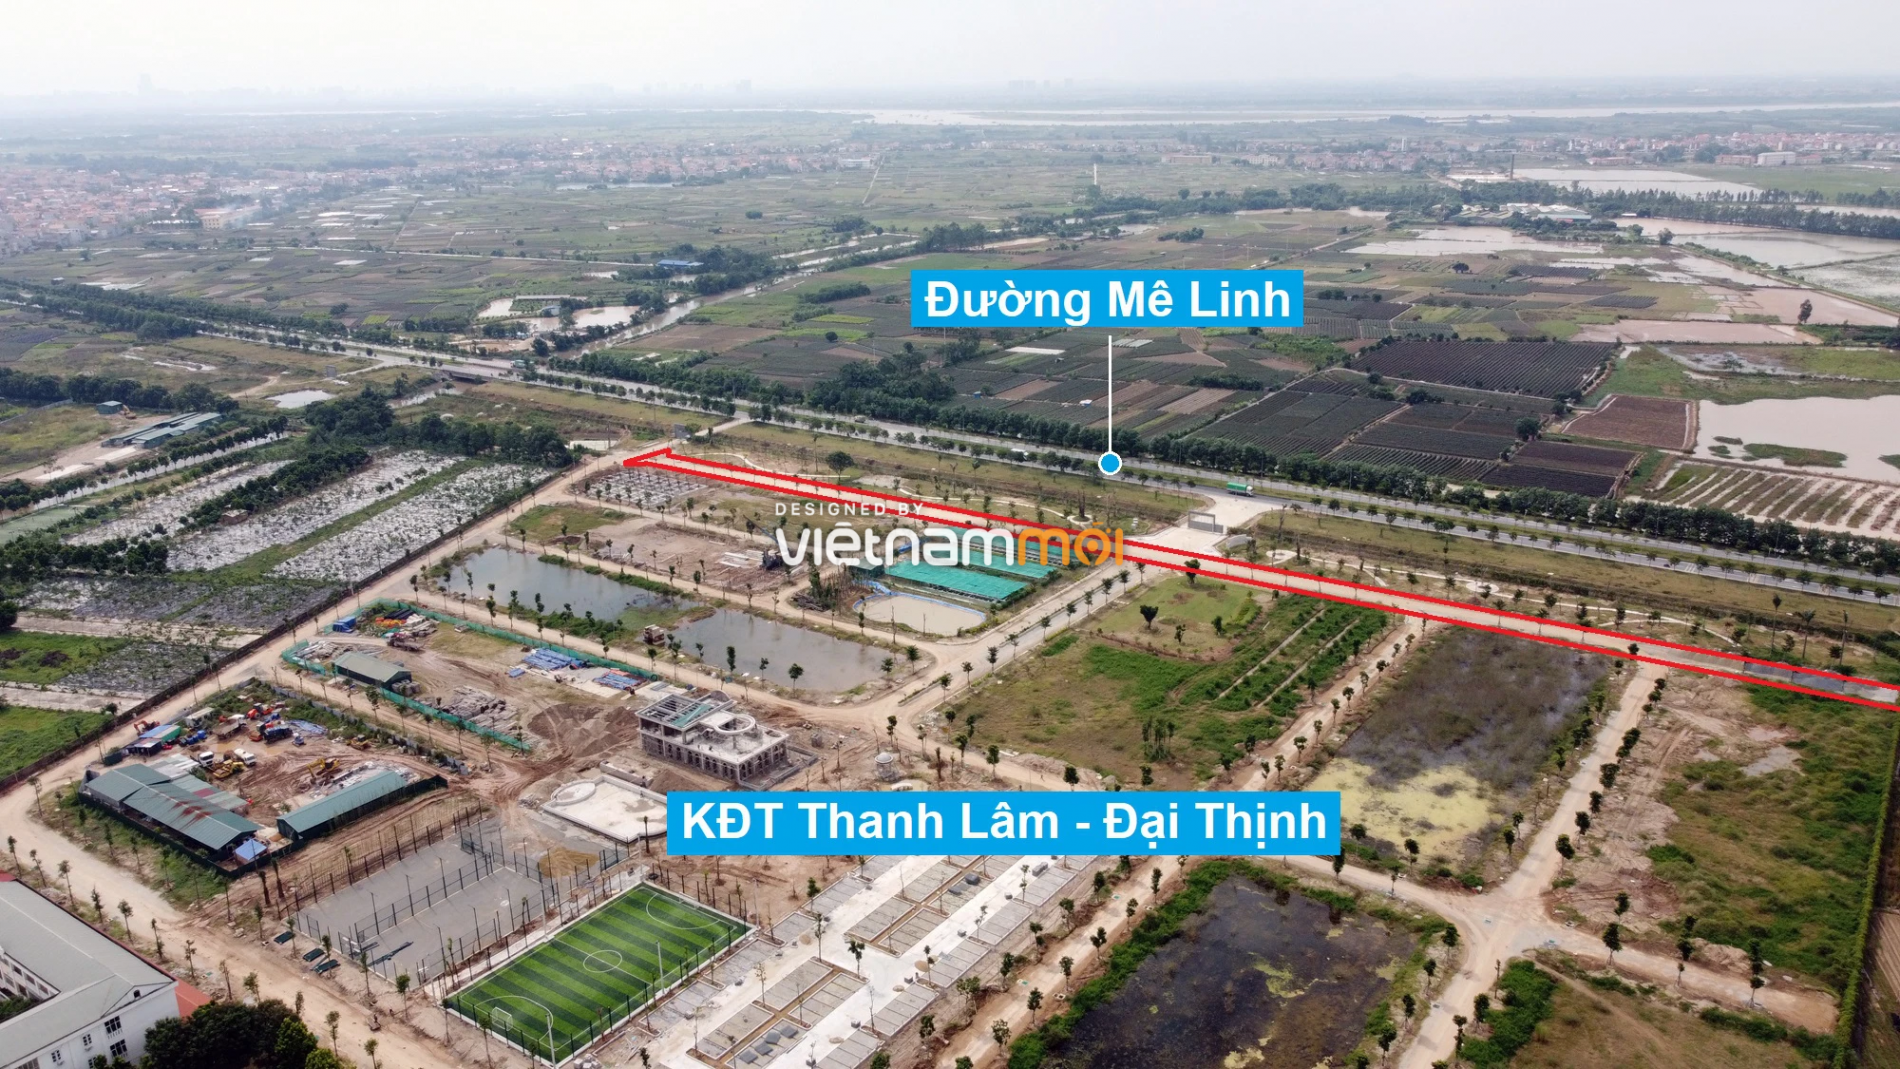 Những khu đất sắp thu hồi để mở đường ở xã Đại Thịnh, Mê Linh, Hà Nội (phần 7) - Ảnh 5.